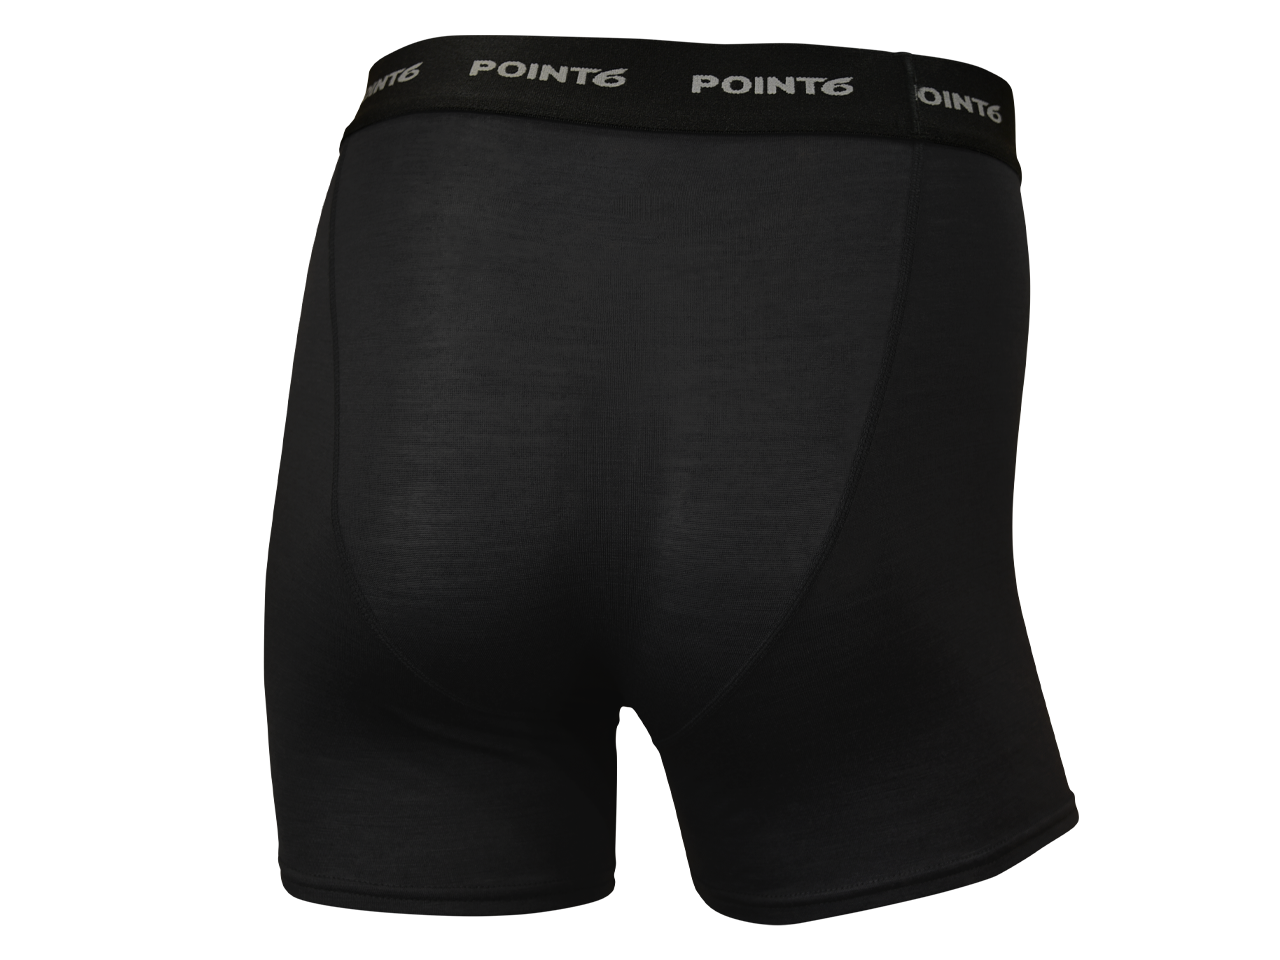 12 Pack of Mens Boxer Briefs Underwear Bulk, 100% Cotton, Soft